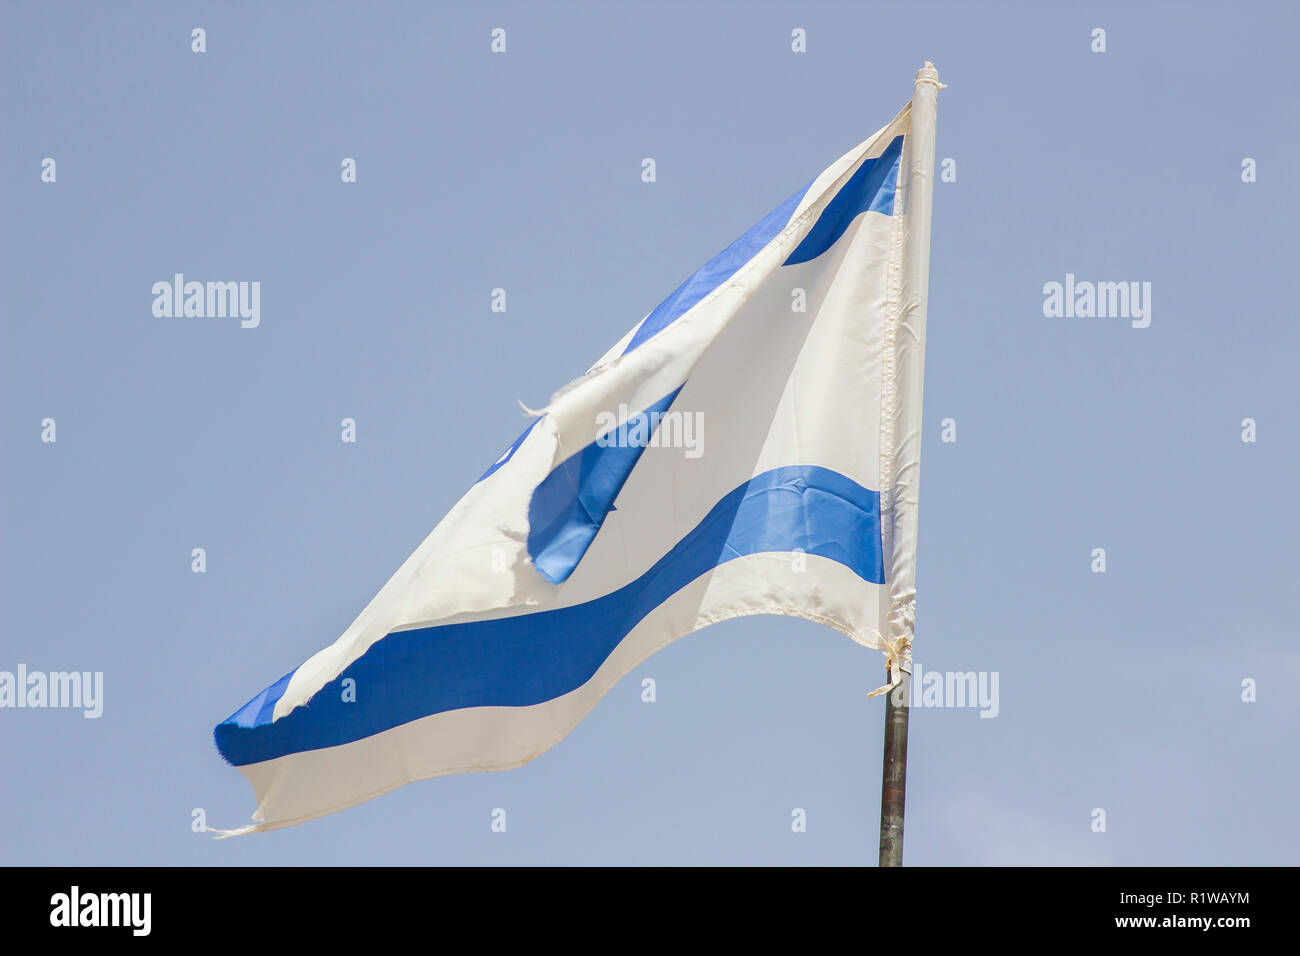 Ein tattered Israelische Flagge aloft in eine steife Brise gegen einen blauen Himmel bei der Banais Naturschutzgebiet in den Golanhöhen Israel. Stockfoto